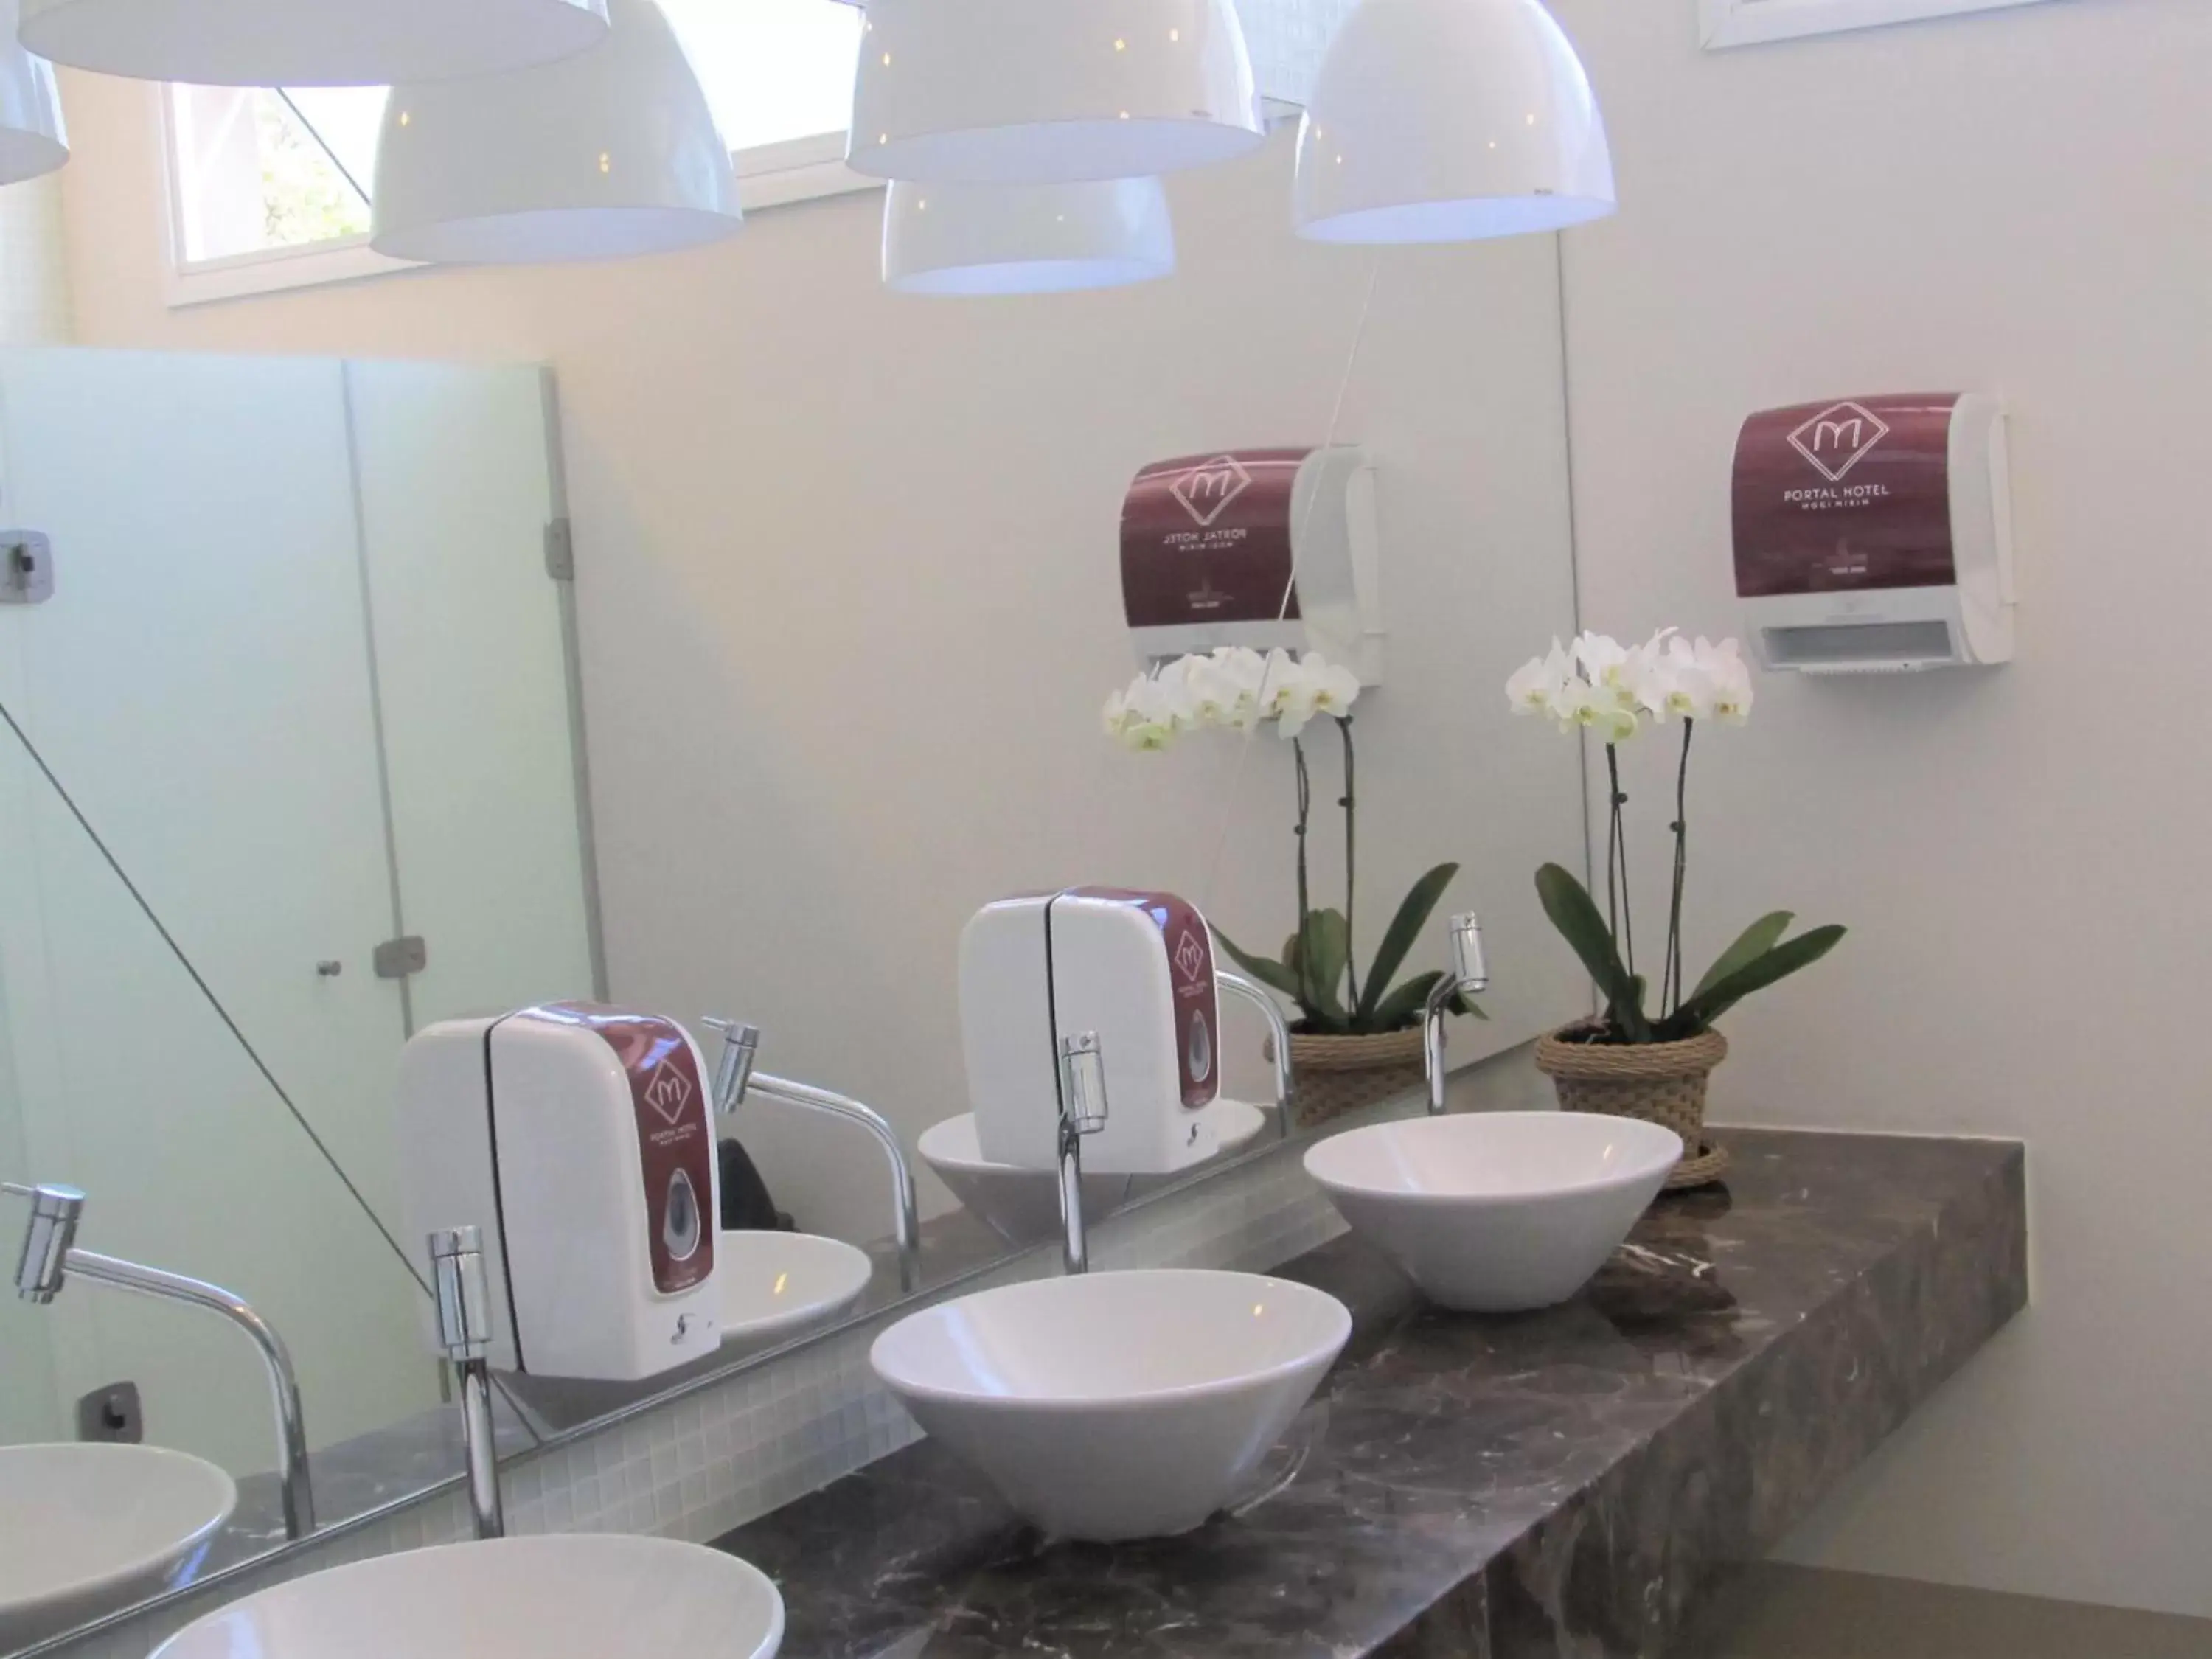 Area and facilities, Bathroom in Portal Hotel Mogi Mirim